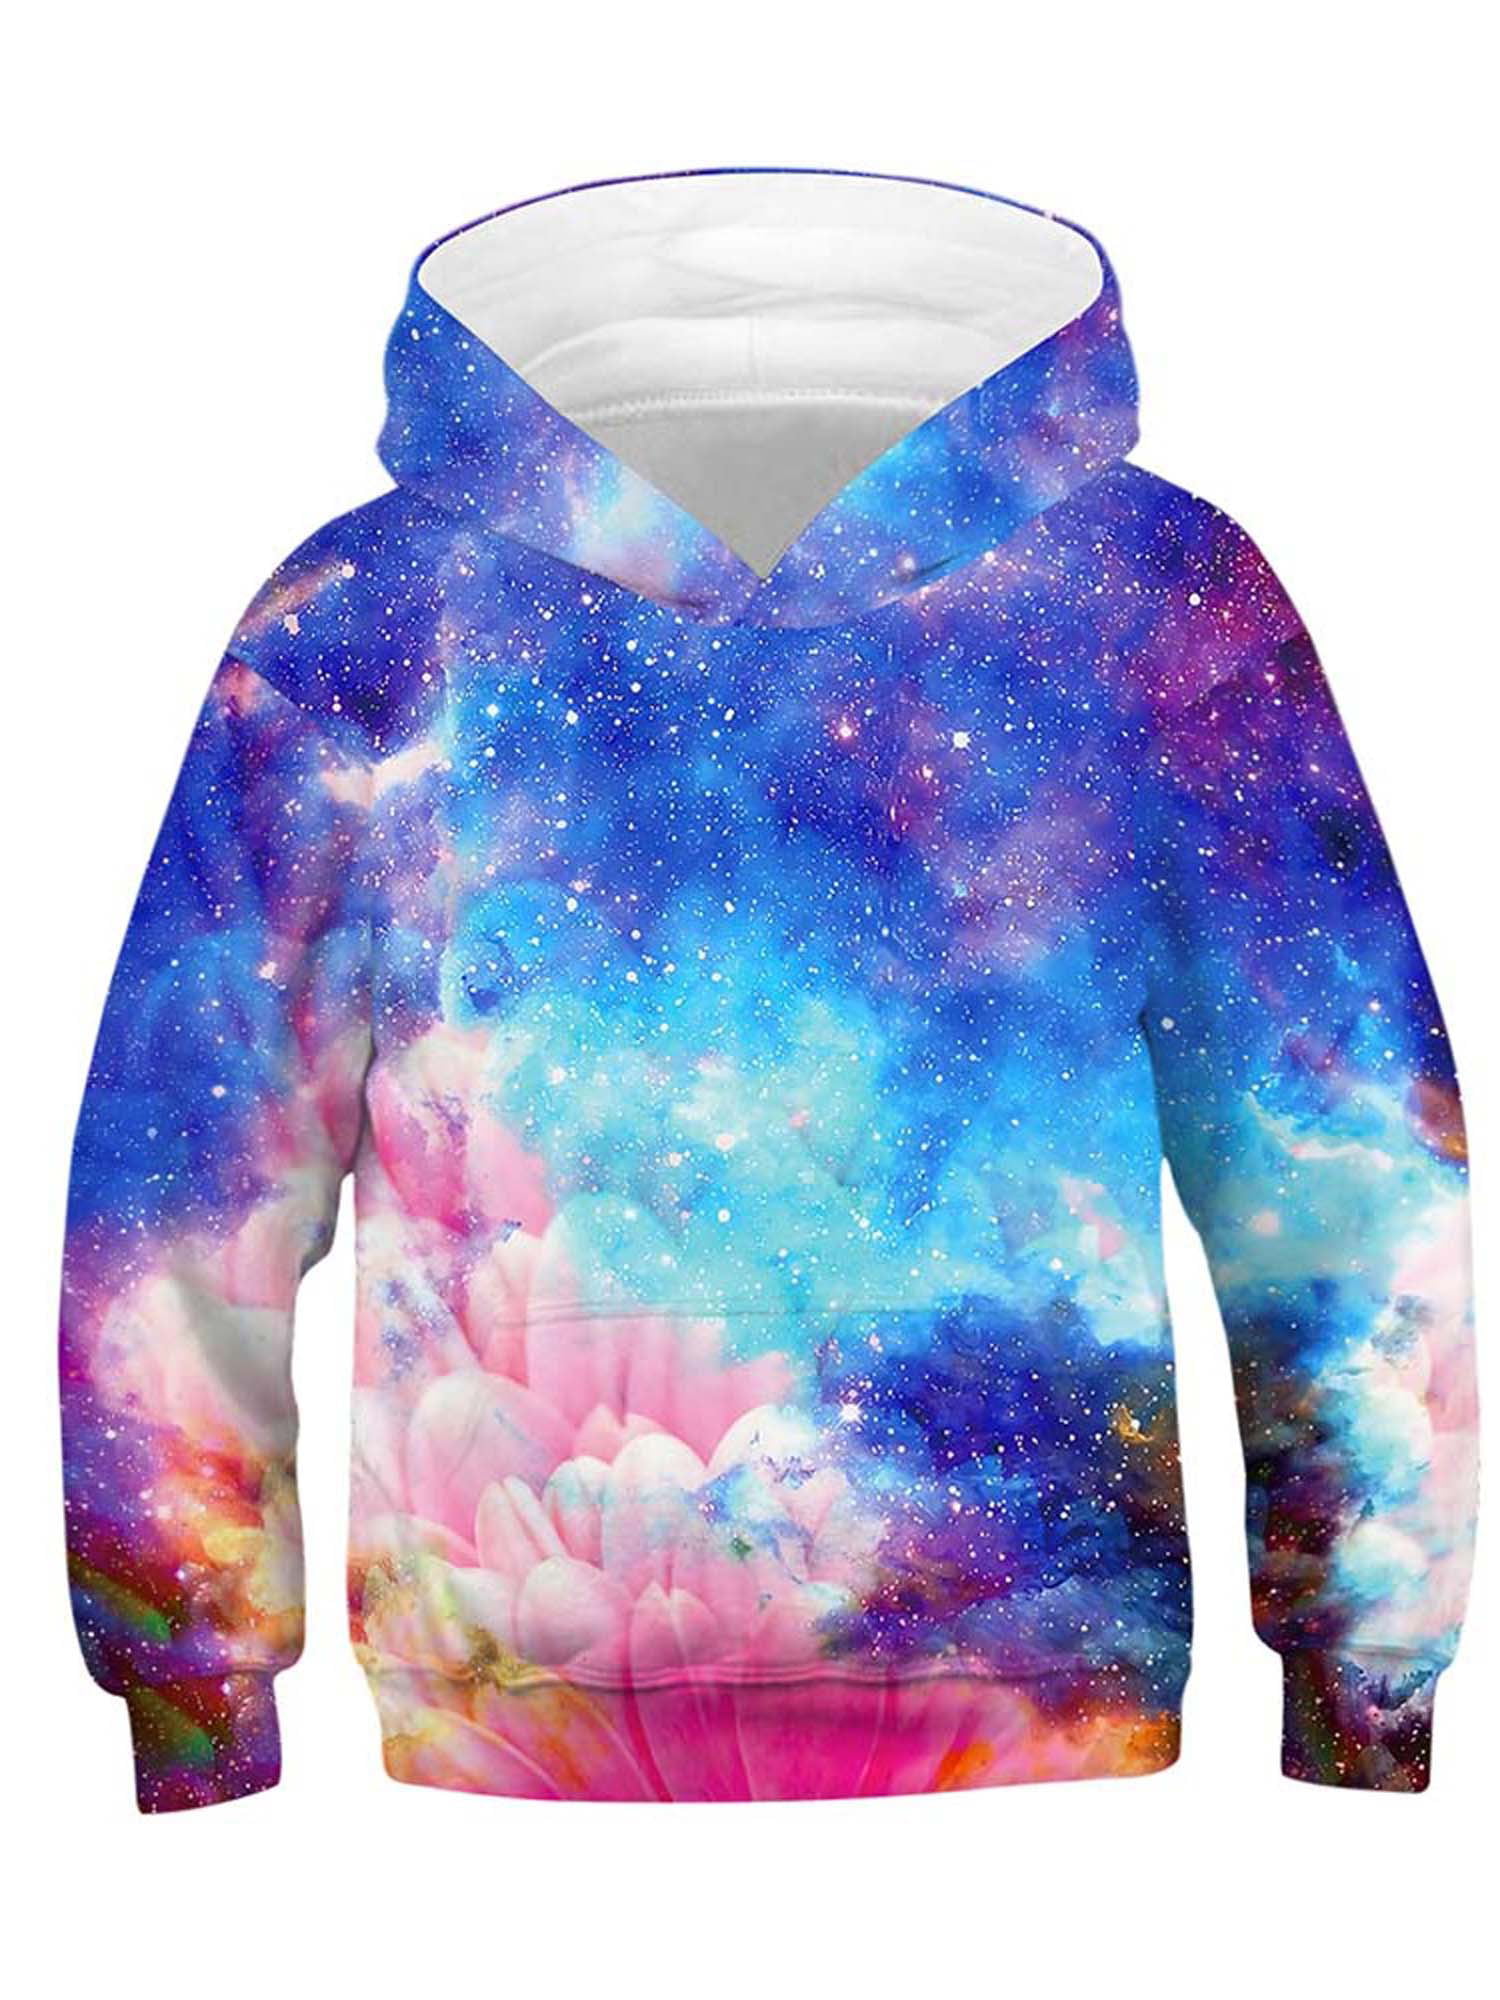 Kids Boys Girls Galaxy Print Hoodie Sweatshirt Pullover Jumper Hooded Coat Tops 